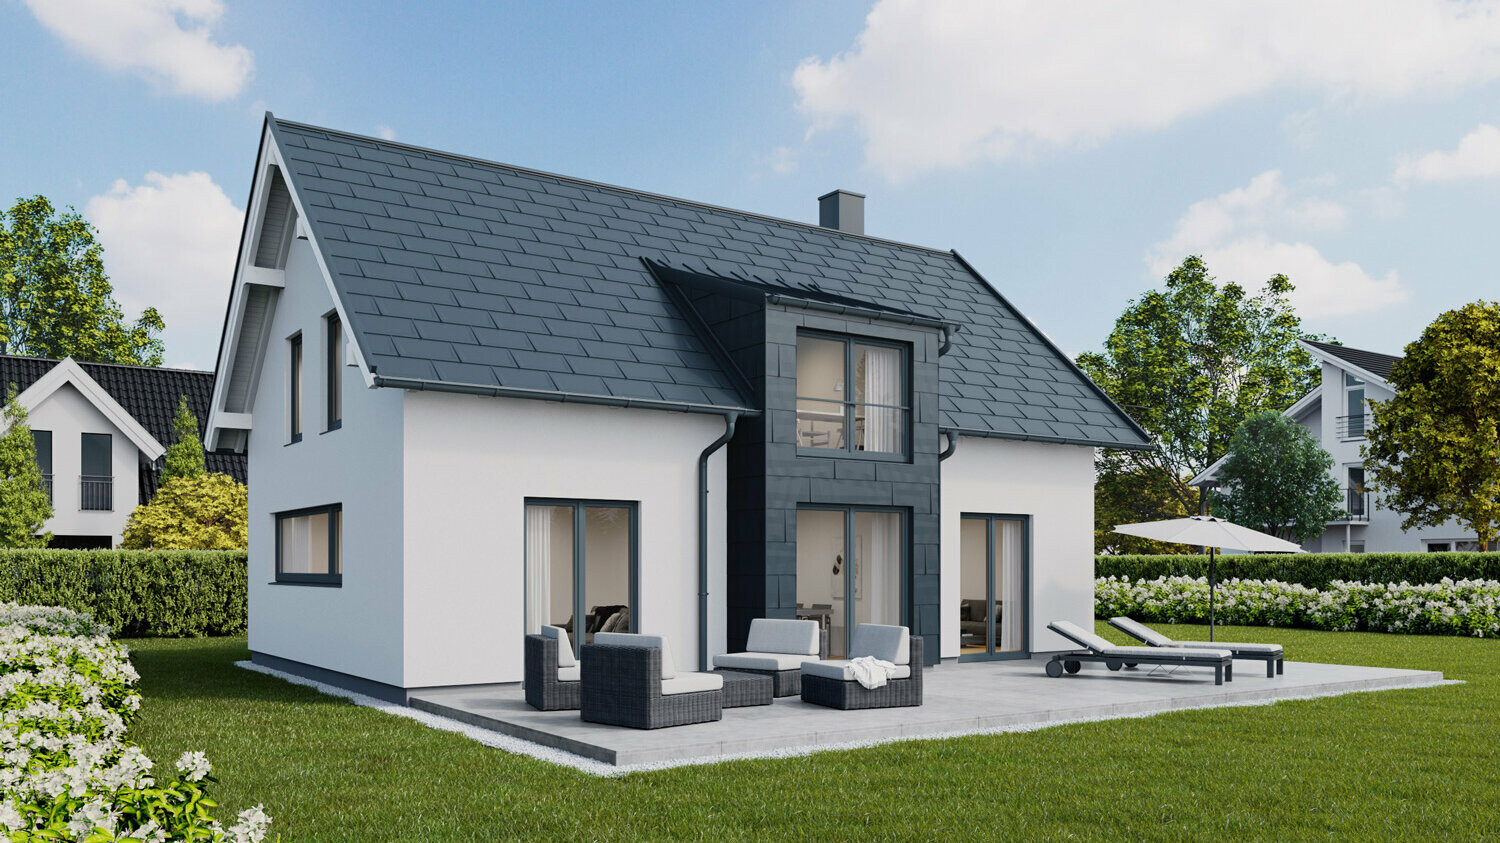 Einfamilienhaus mit Satteldach mit PREFA Dachplatten R.16 und Fassadenpaneelen FX.12 in P.10 Anthrazit 